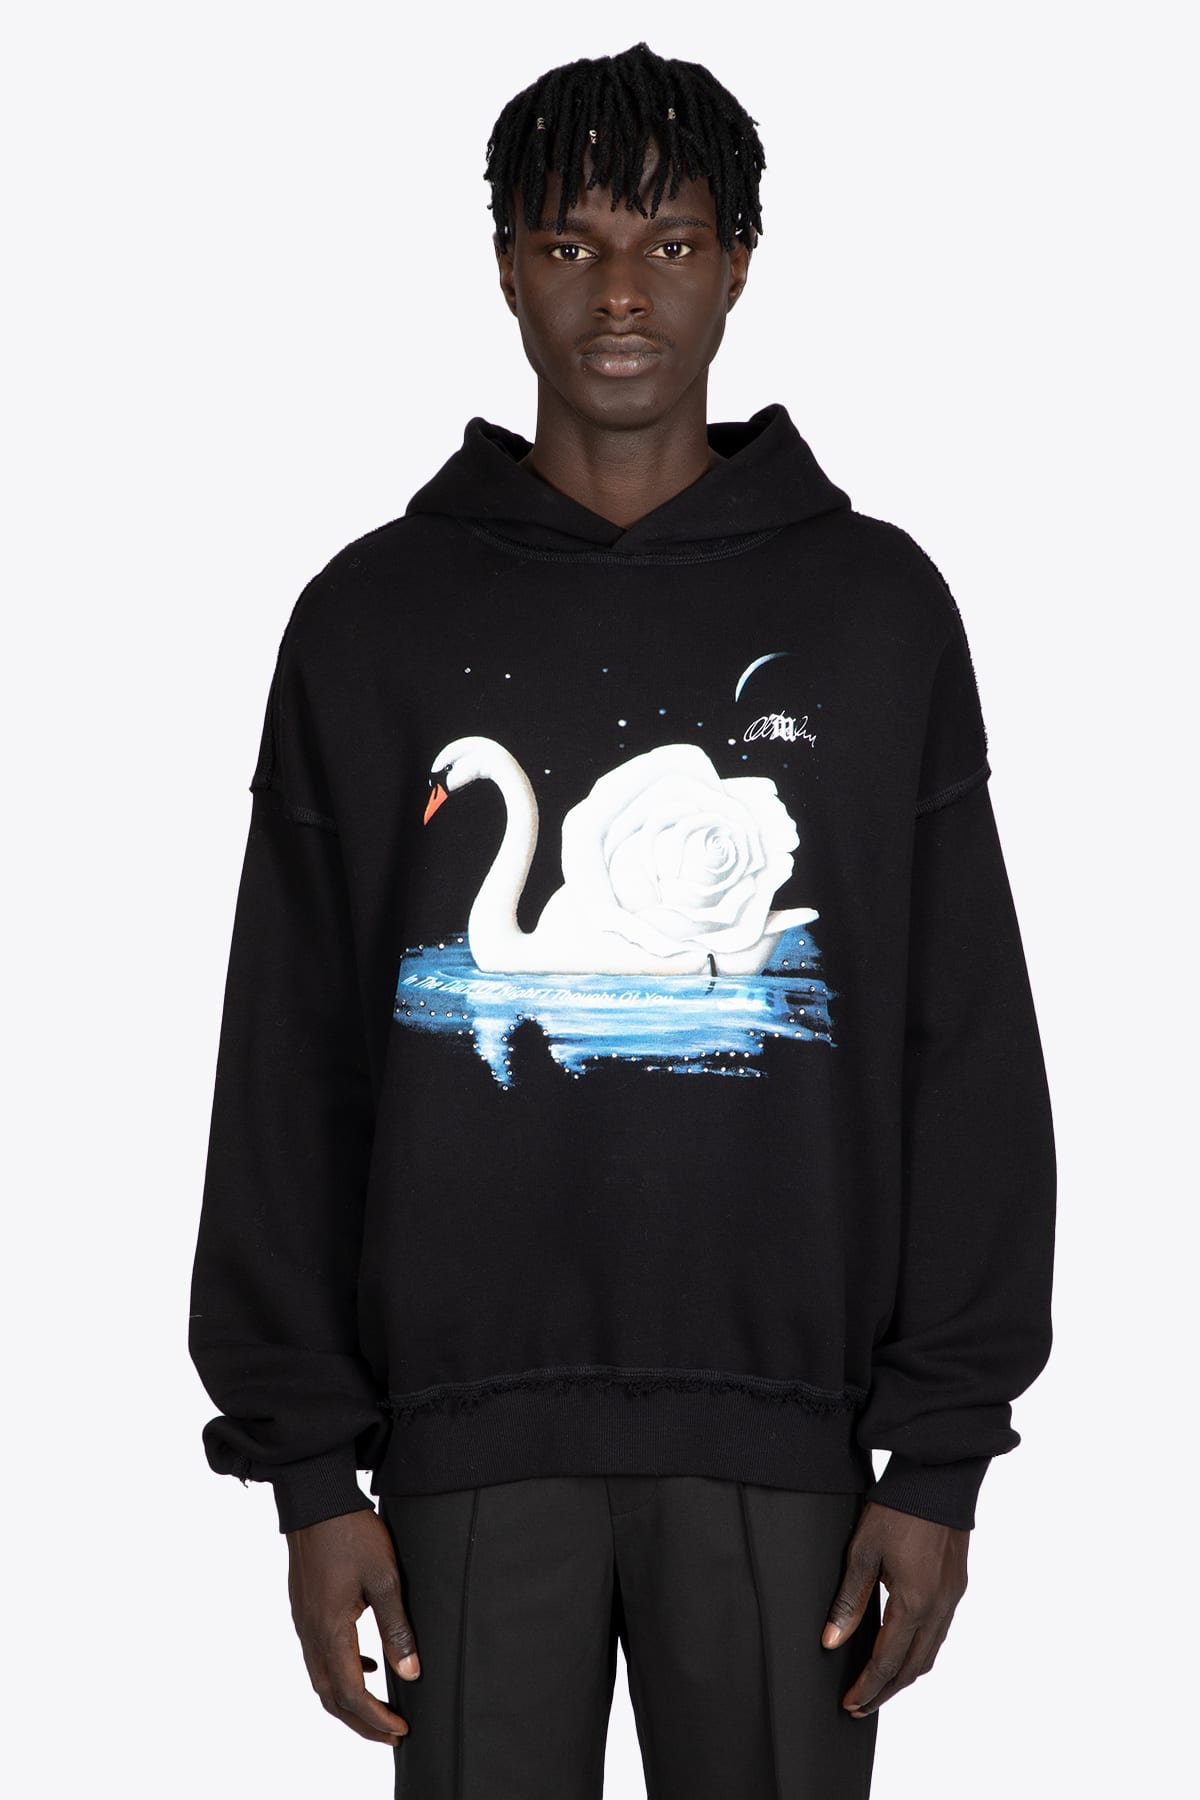 MISBHV Night Swan Hoodie Black cotton hoodie with night swan print